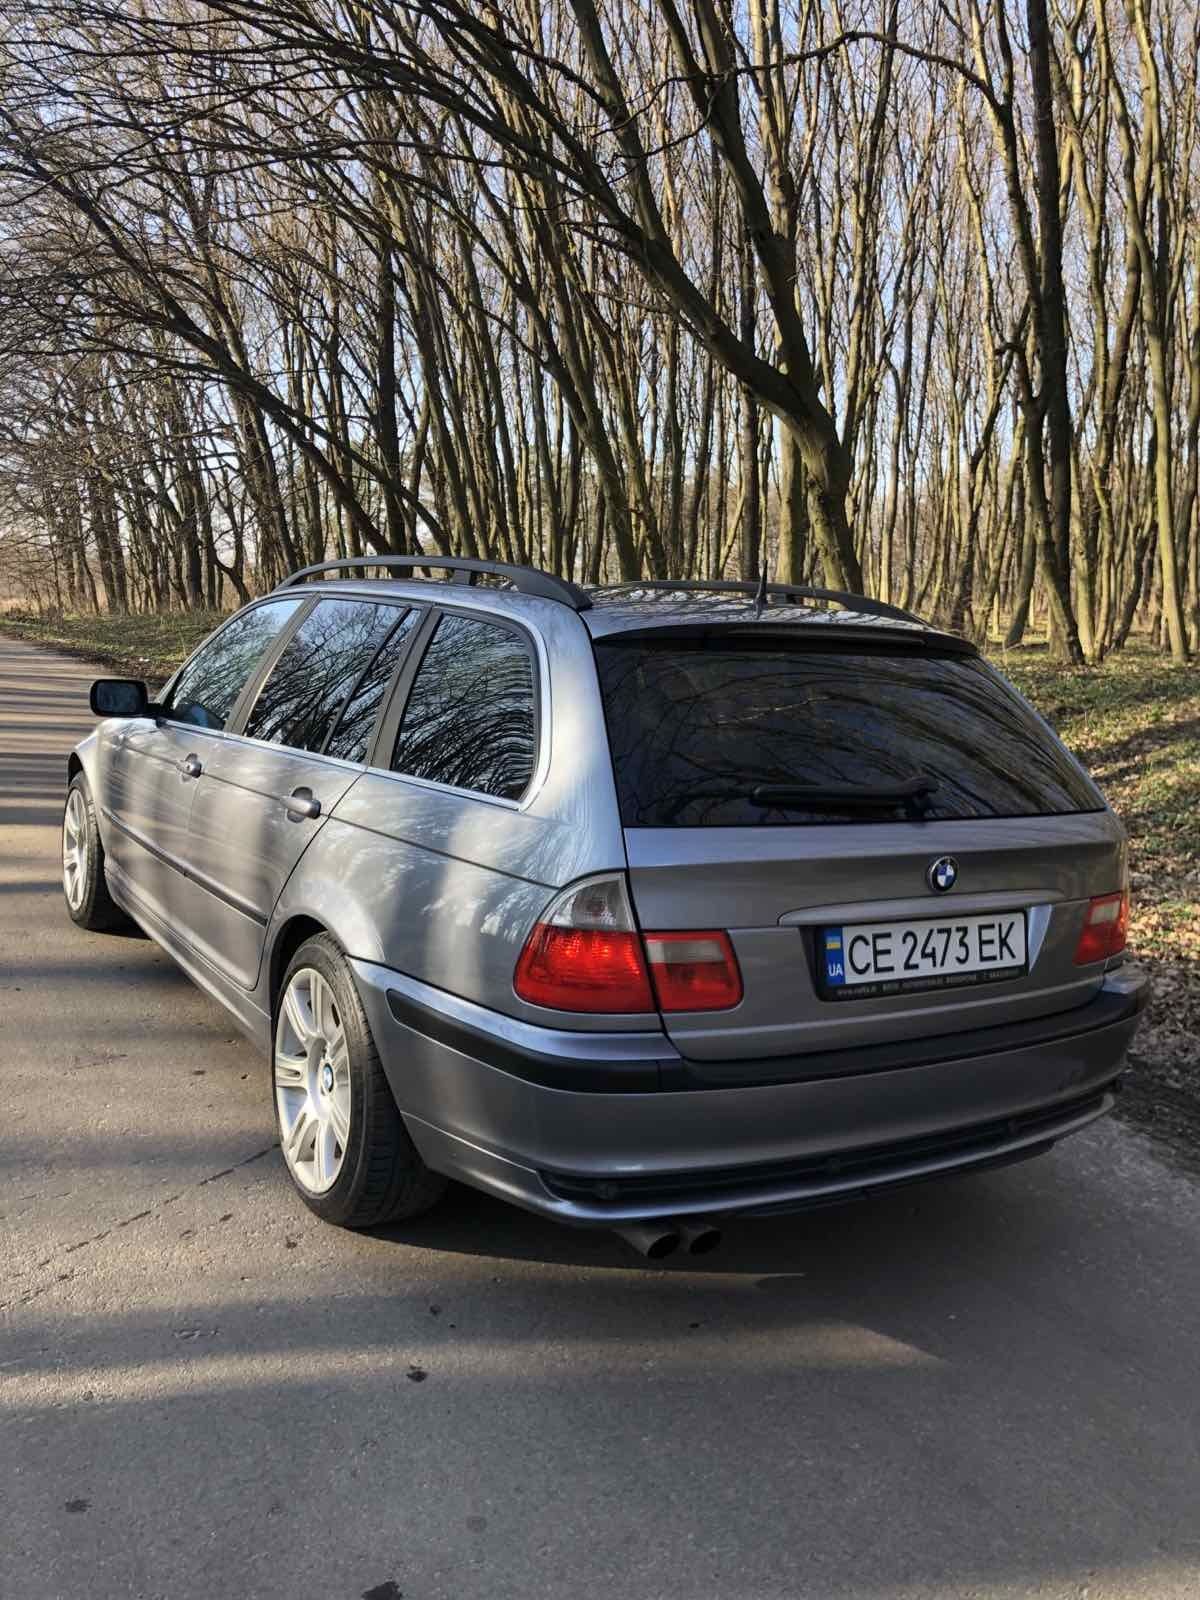 BMW E46 330xdrive М57
Авто в близькому до ідеального стану, без чека))